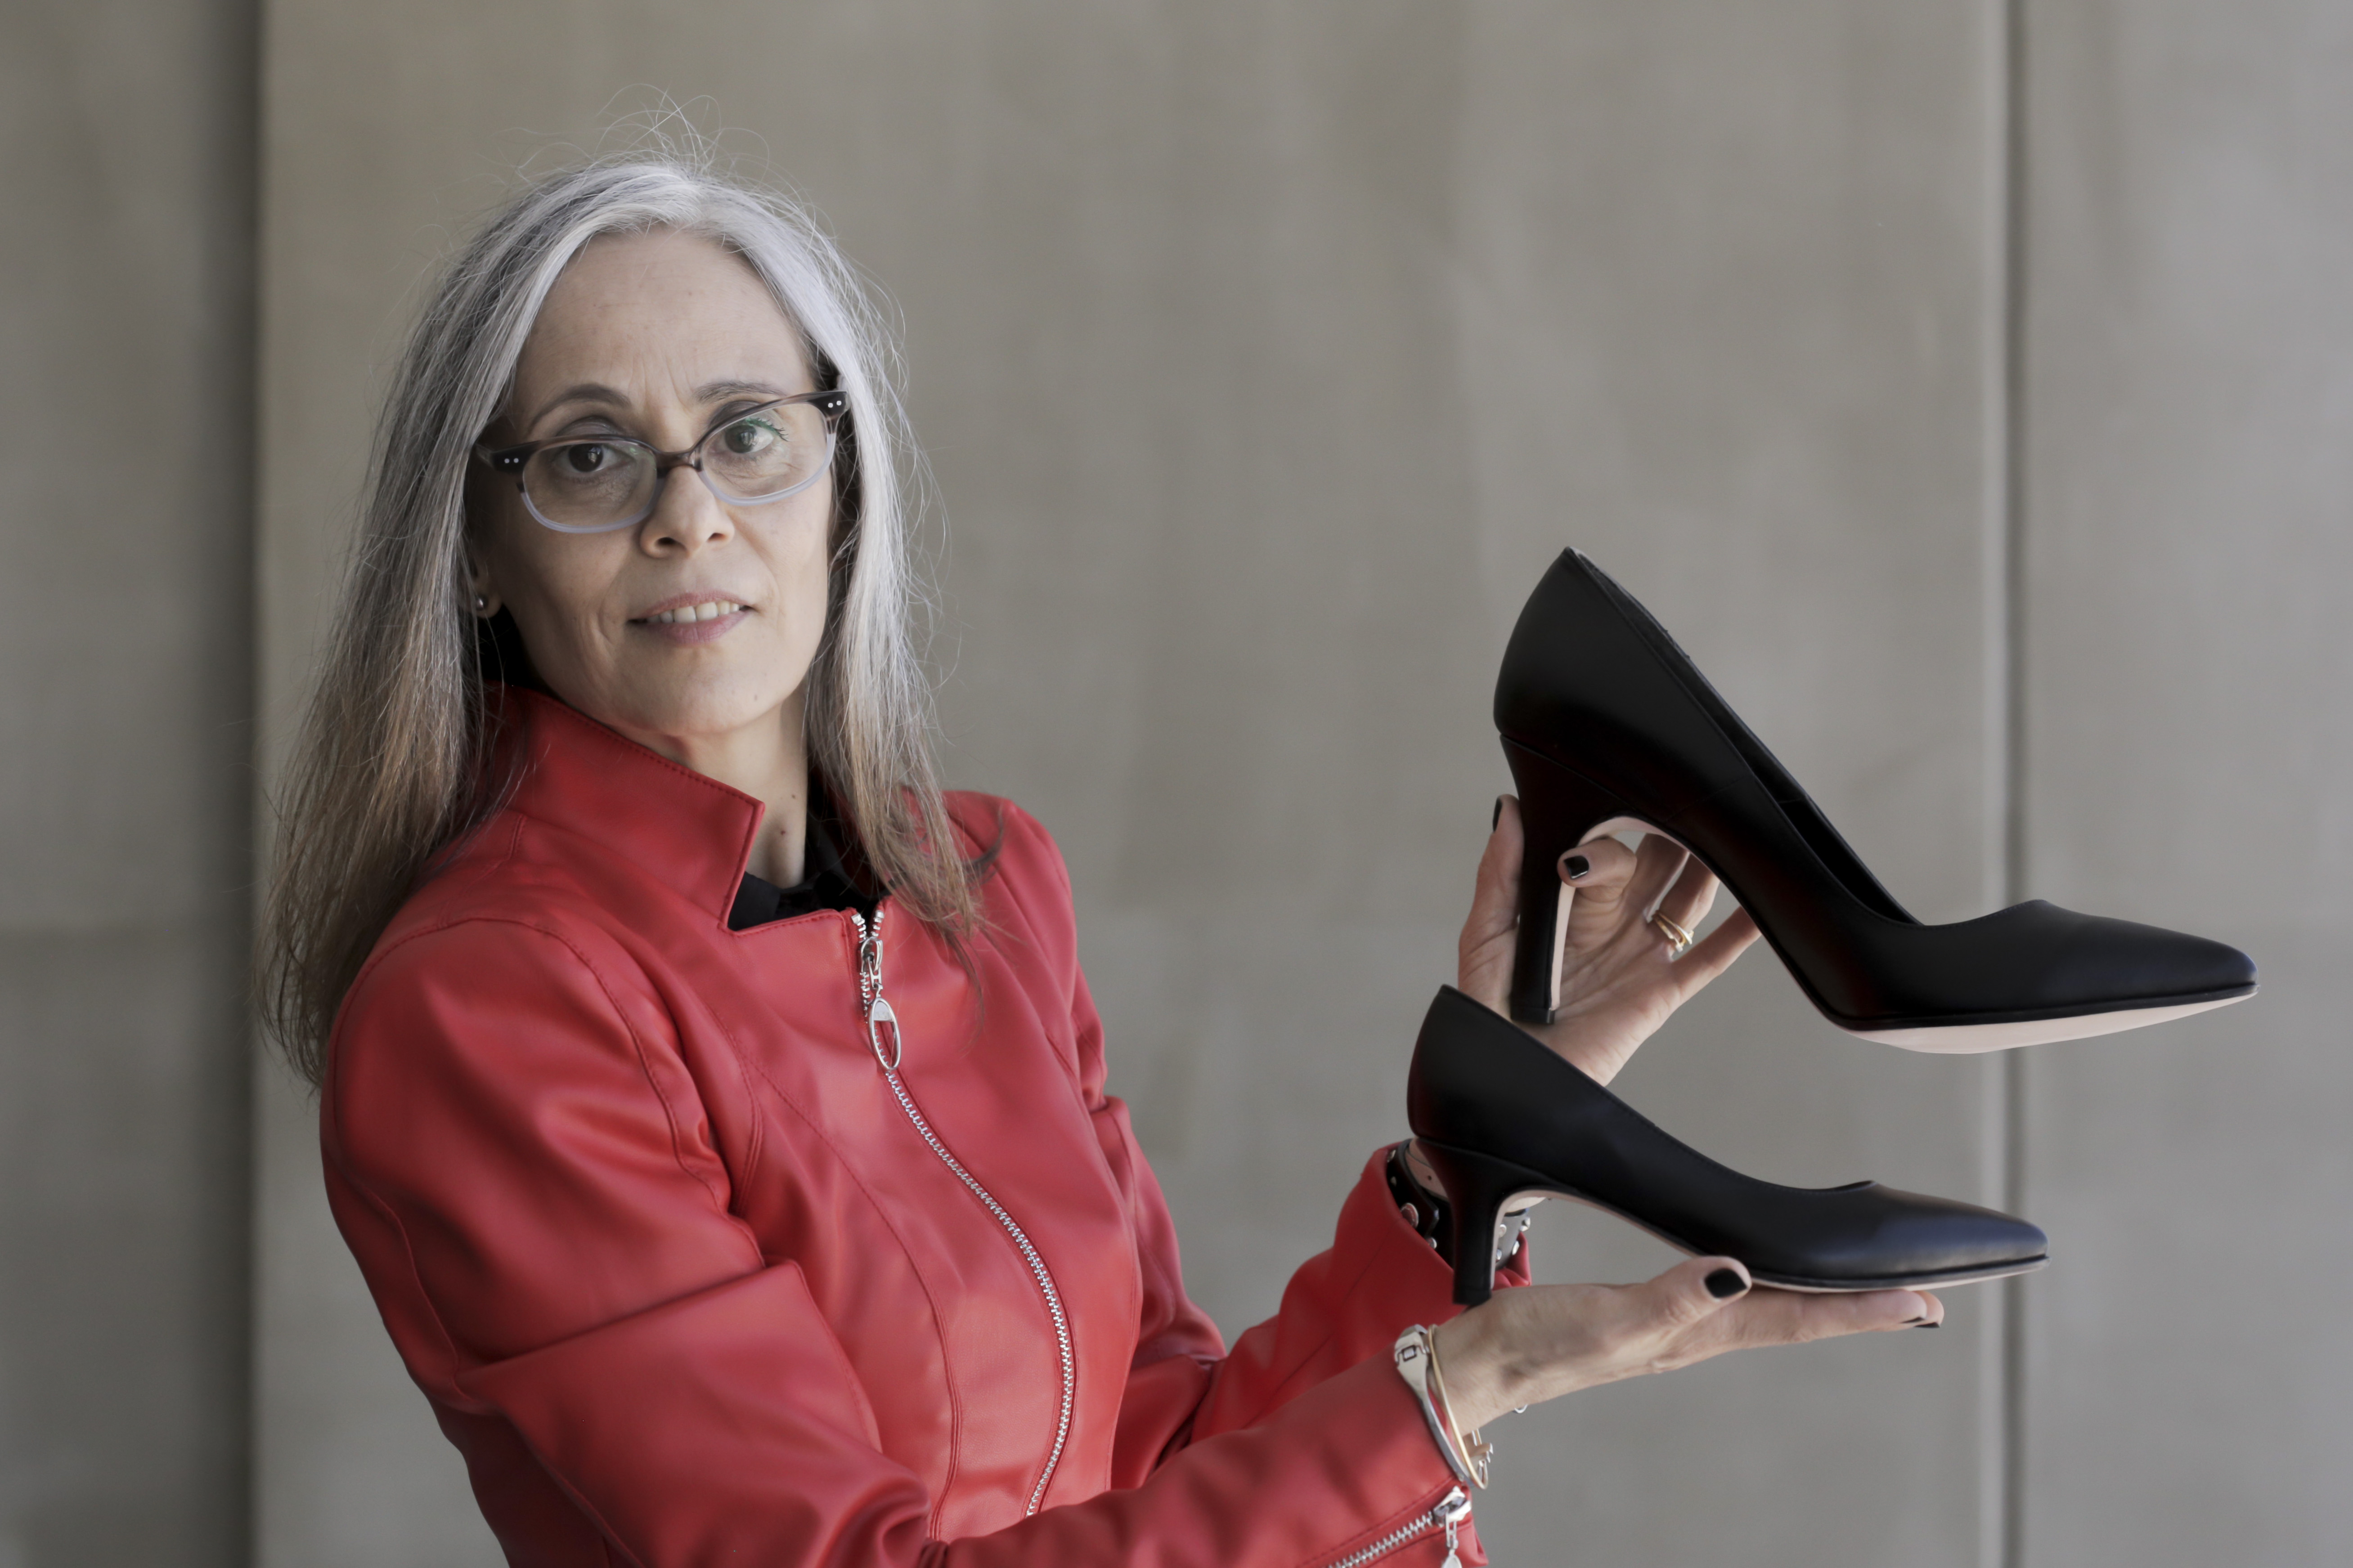 Calza 32 y la inspiró, a los 51 años, a crear una de zapatos para mujeres - Forbes